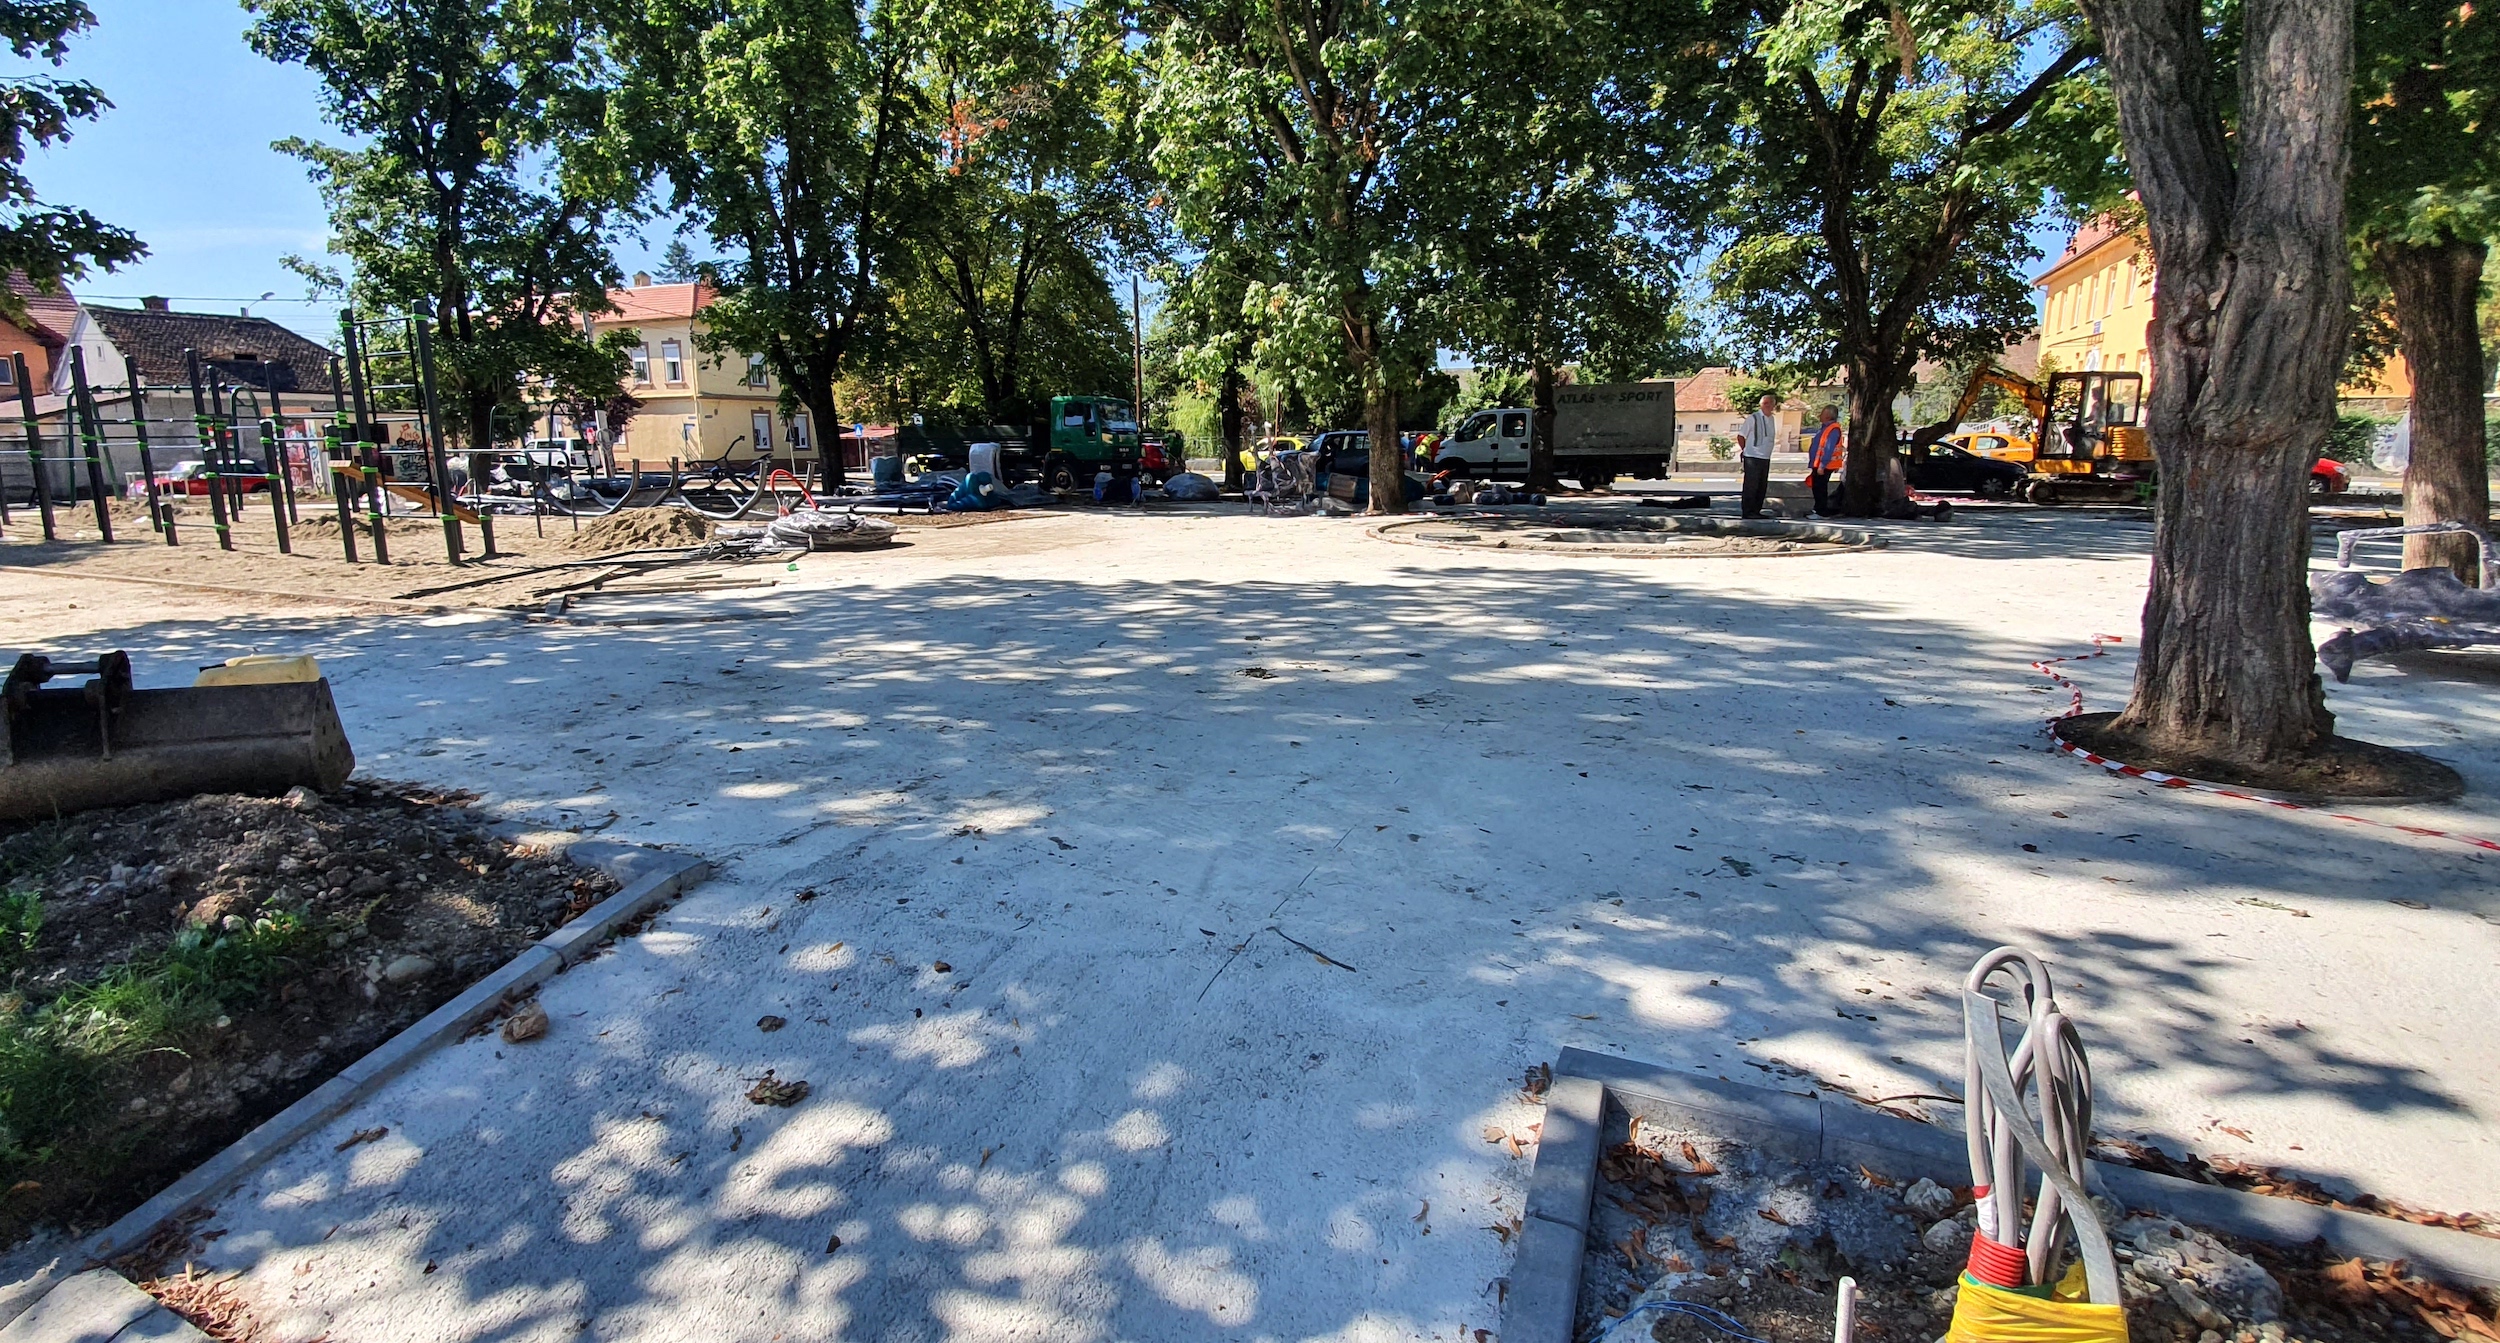 Explicația suprafețelor betonate în parcul din Piața Cluj: alei educative